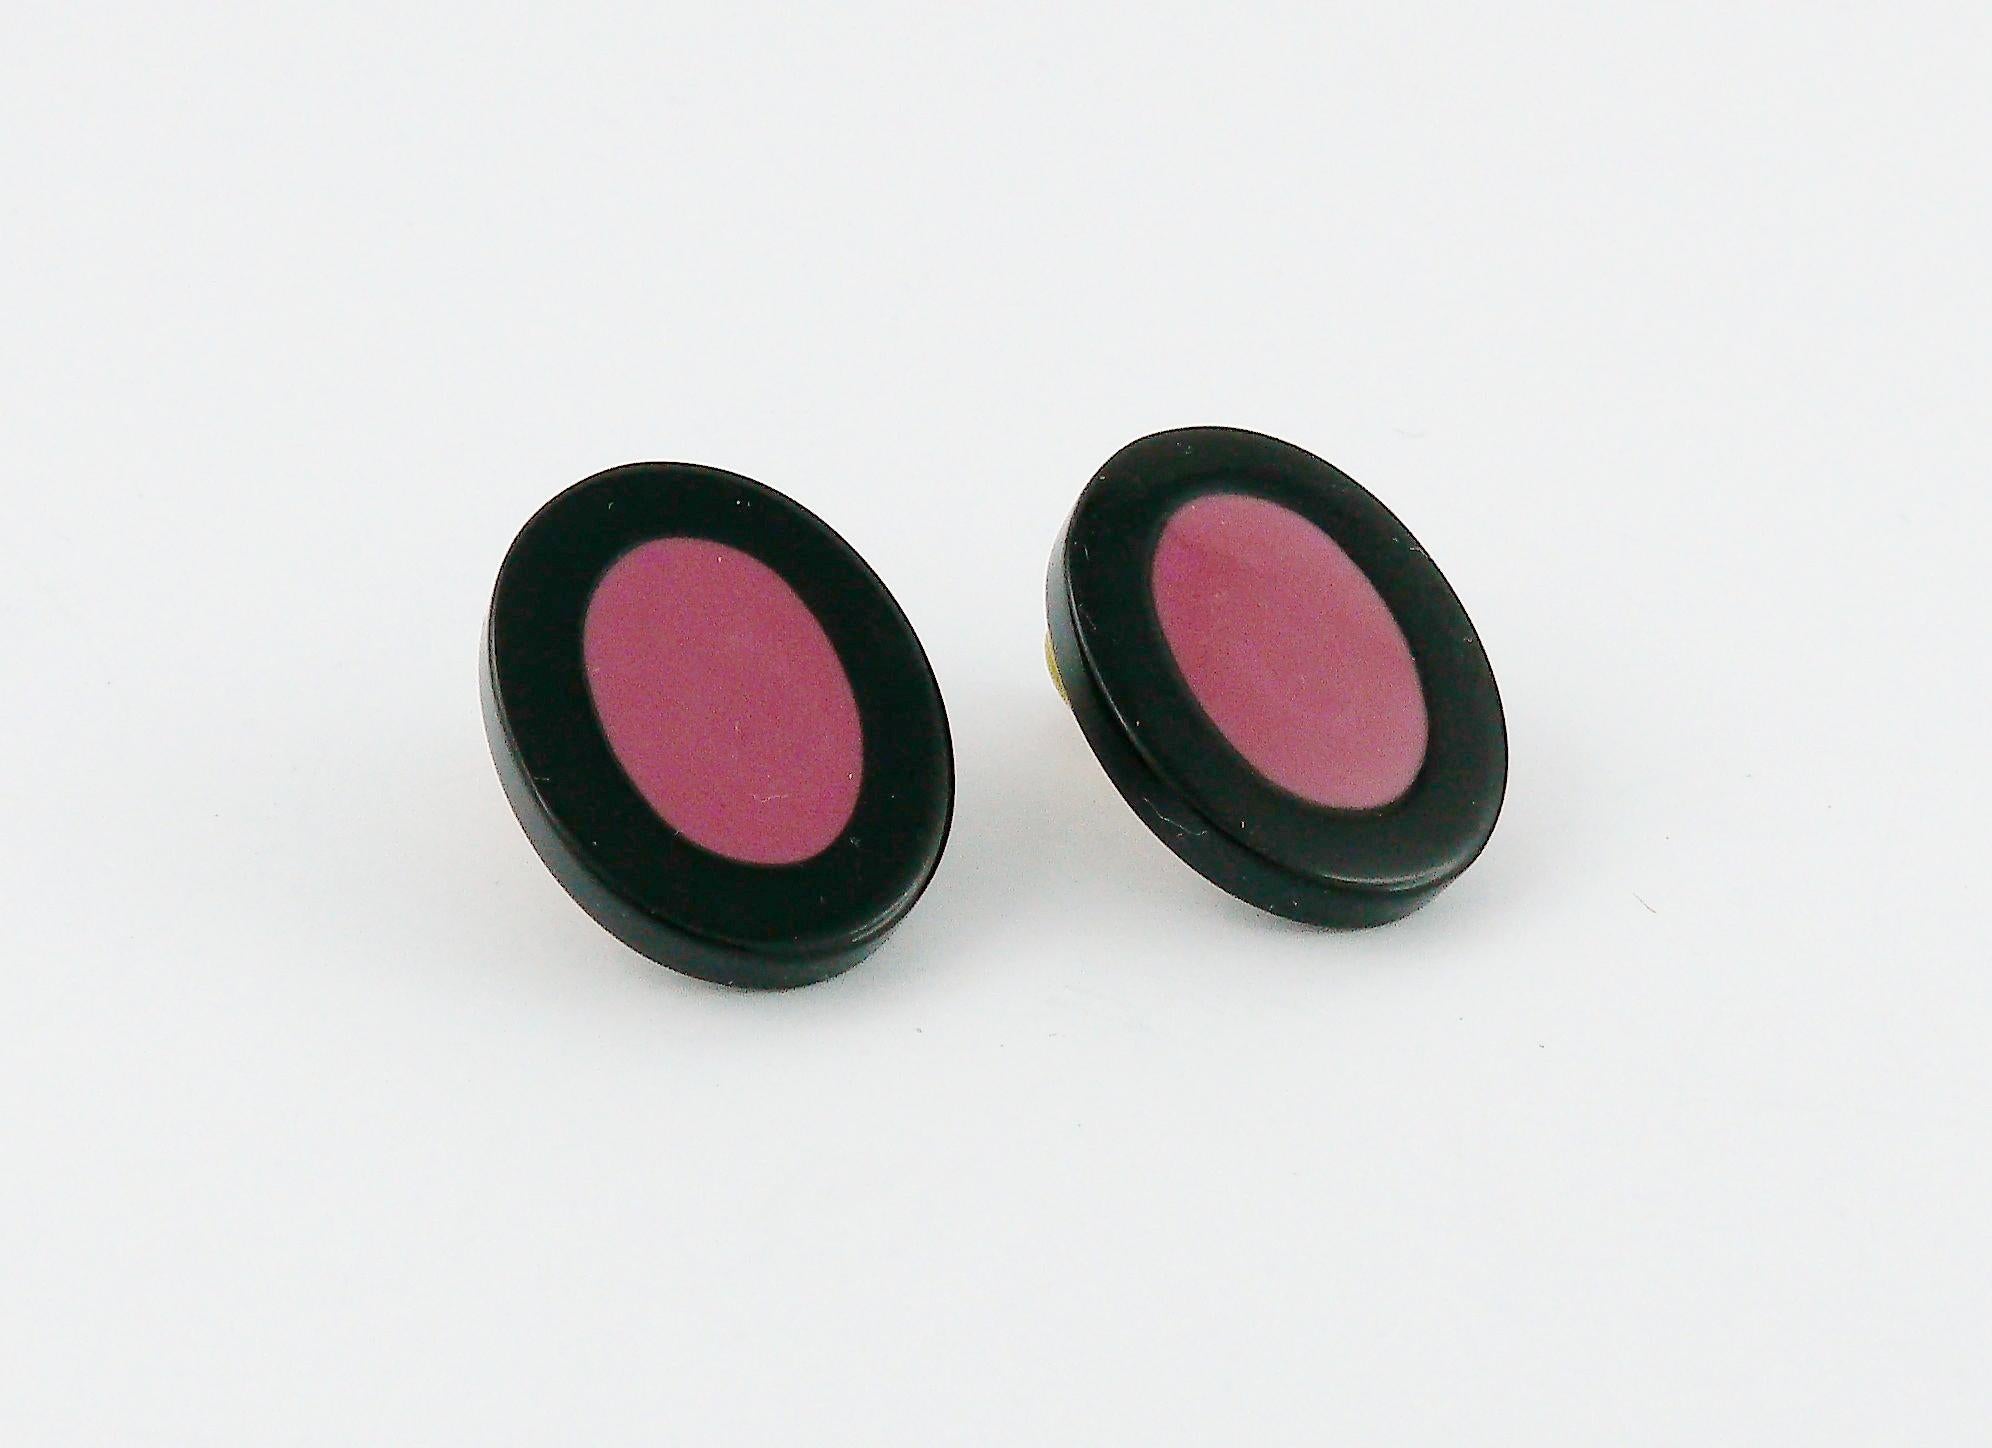 YVES SAINT LAURENT Vintage-Ohrringe in abstrakter Form mit einem Oval aus schwarzem und rosa Harz.

Geprägtes YSL.

Ungefähre Maße: Höhe ca. 2,2 cm (0,87 inch) / Breite ca. 1,8 cm (0,71 inch).

SCHMUCK-ZUSTANDSTABELLE
- Neu oder nie getragen: